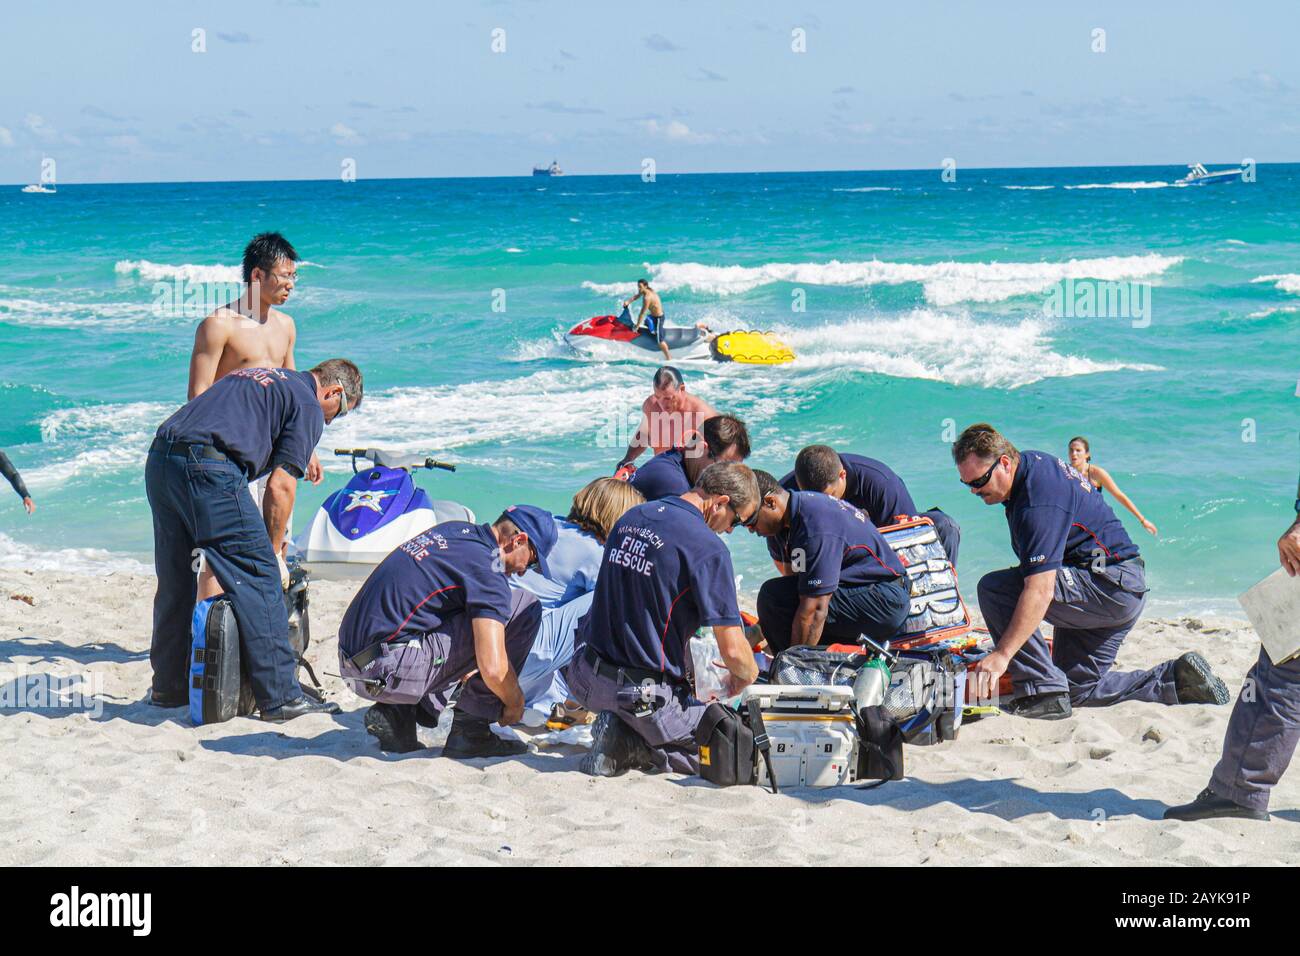 Miami Beach Florida, Wasser im Atlantik, Feuerrettung, Notfall, Anwendung der Herz-Lungen-Wiederbelebung, nahe ertrinkende Opfer raue Brandung reißende Strömungen Stockfoto